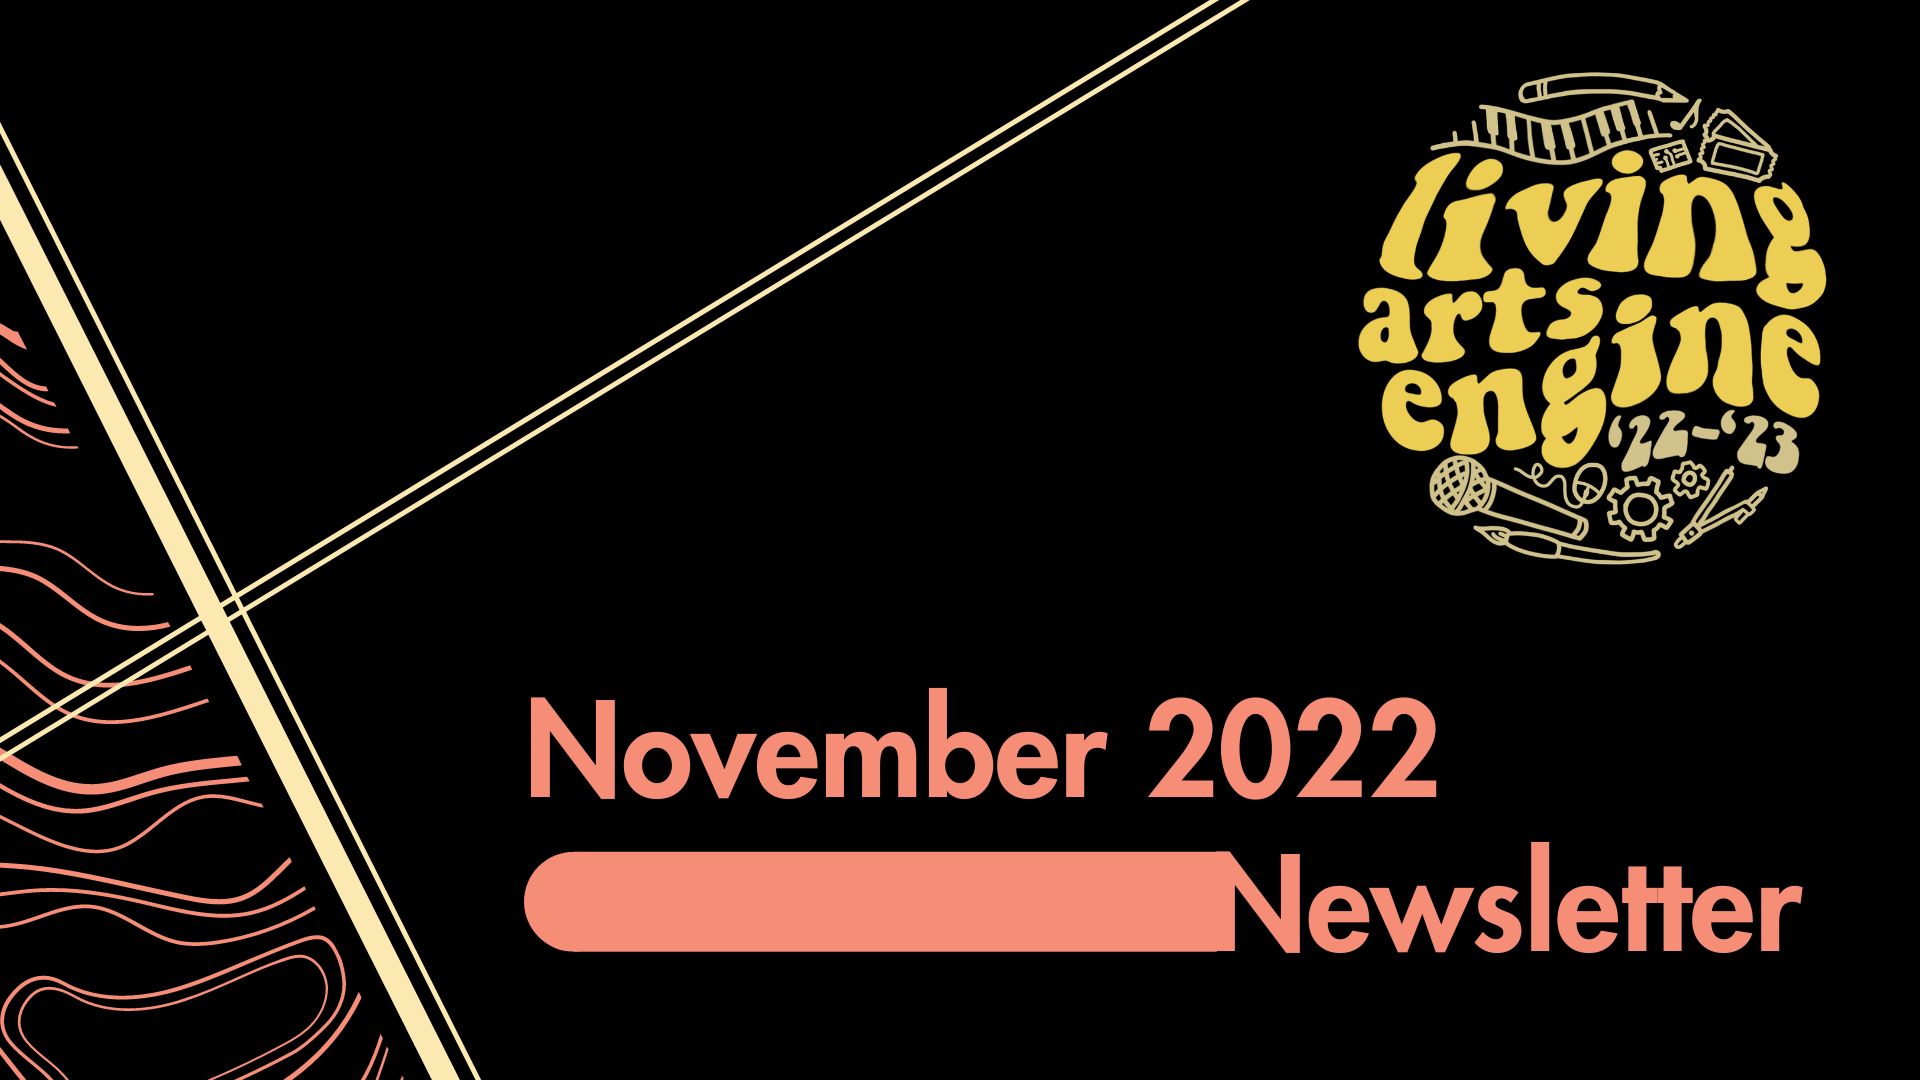 November 2022 Newsletter Cover